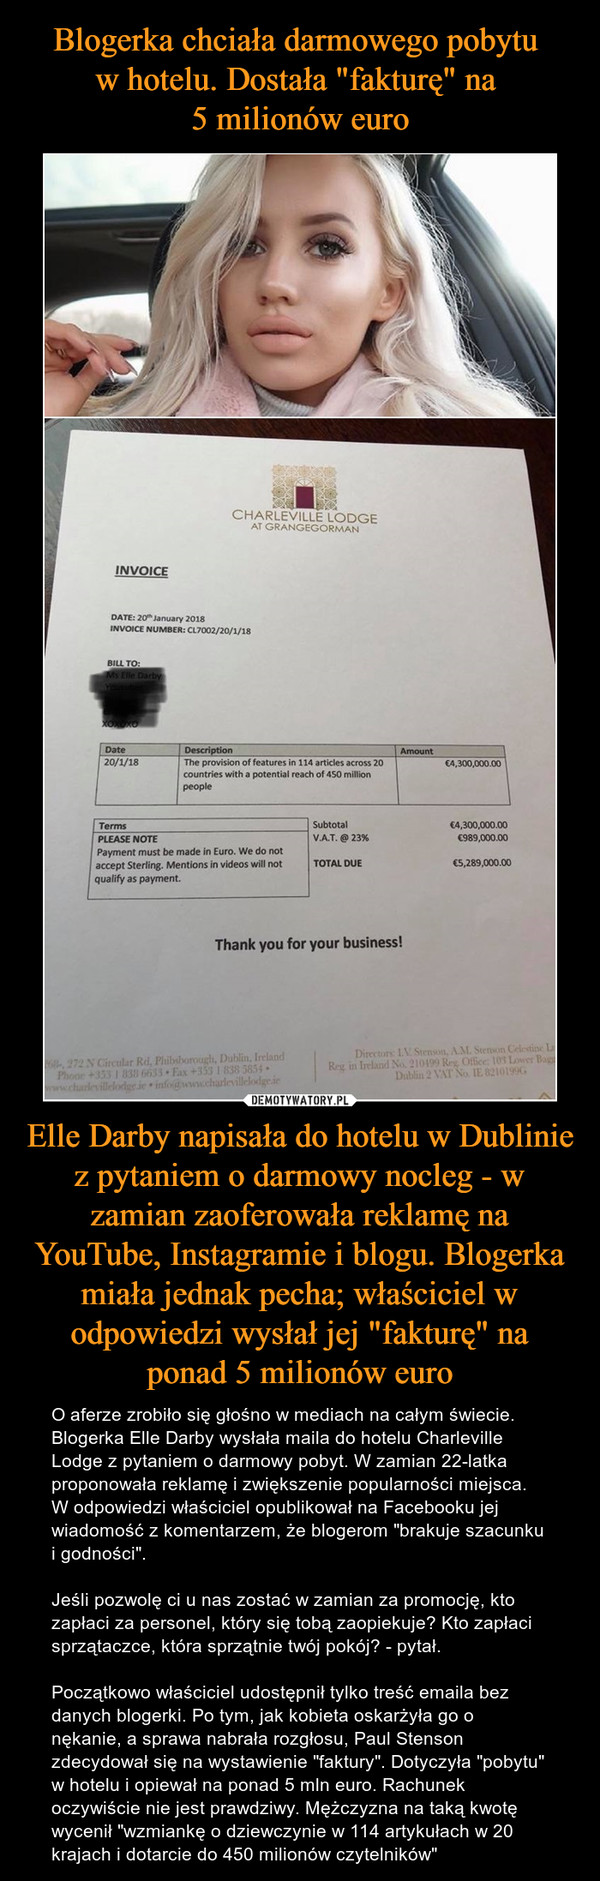 Blogerka chciała darmowego pobytu 
w hotelu. Dostała "fakturę" na 
5 milionów euro Elle Darby napisała do hotelu w Dublinie z pytaniem o darmowy nocleg - w zamian zaoferowała reklamę na YouTube, Instagramie i blogu. Blogerka miała jednak pecha; właściciel w odpowiedzi wysłał jej "fakturę" na ponad 5 milionów euro